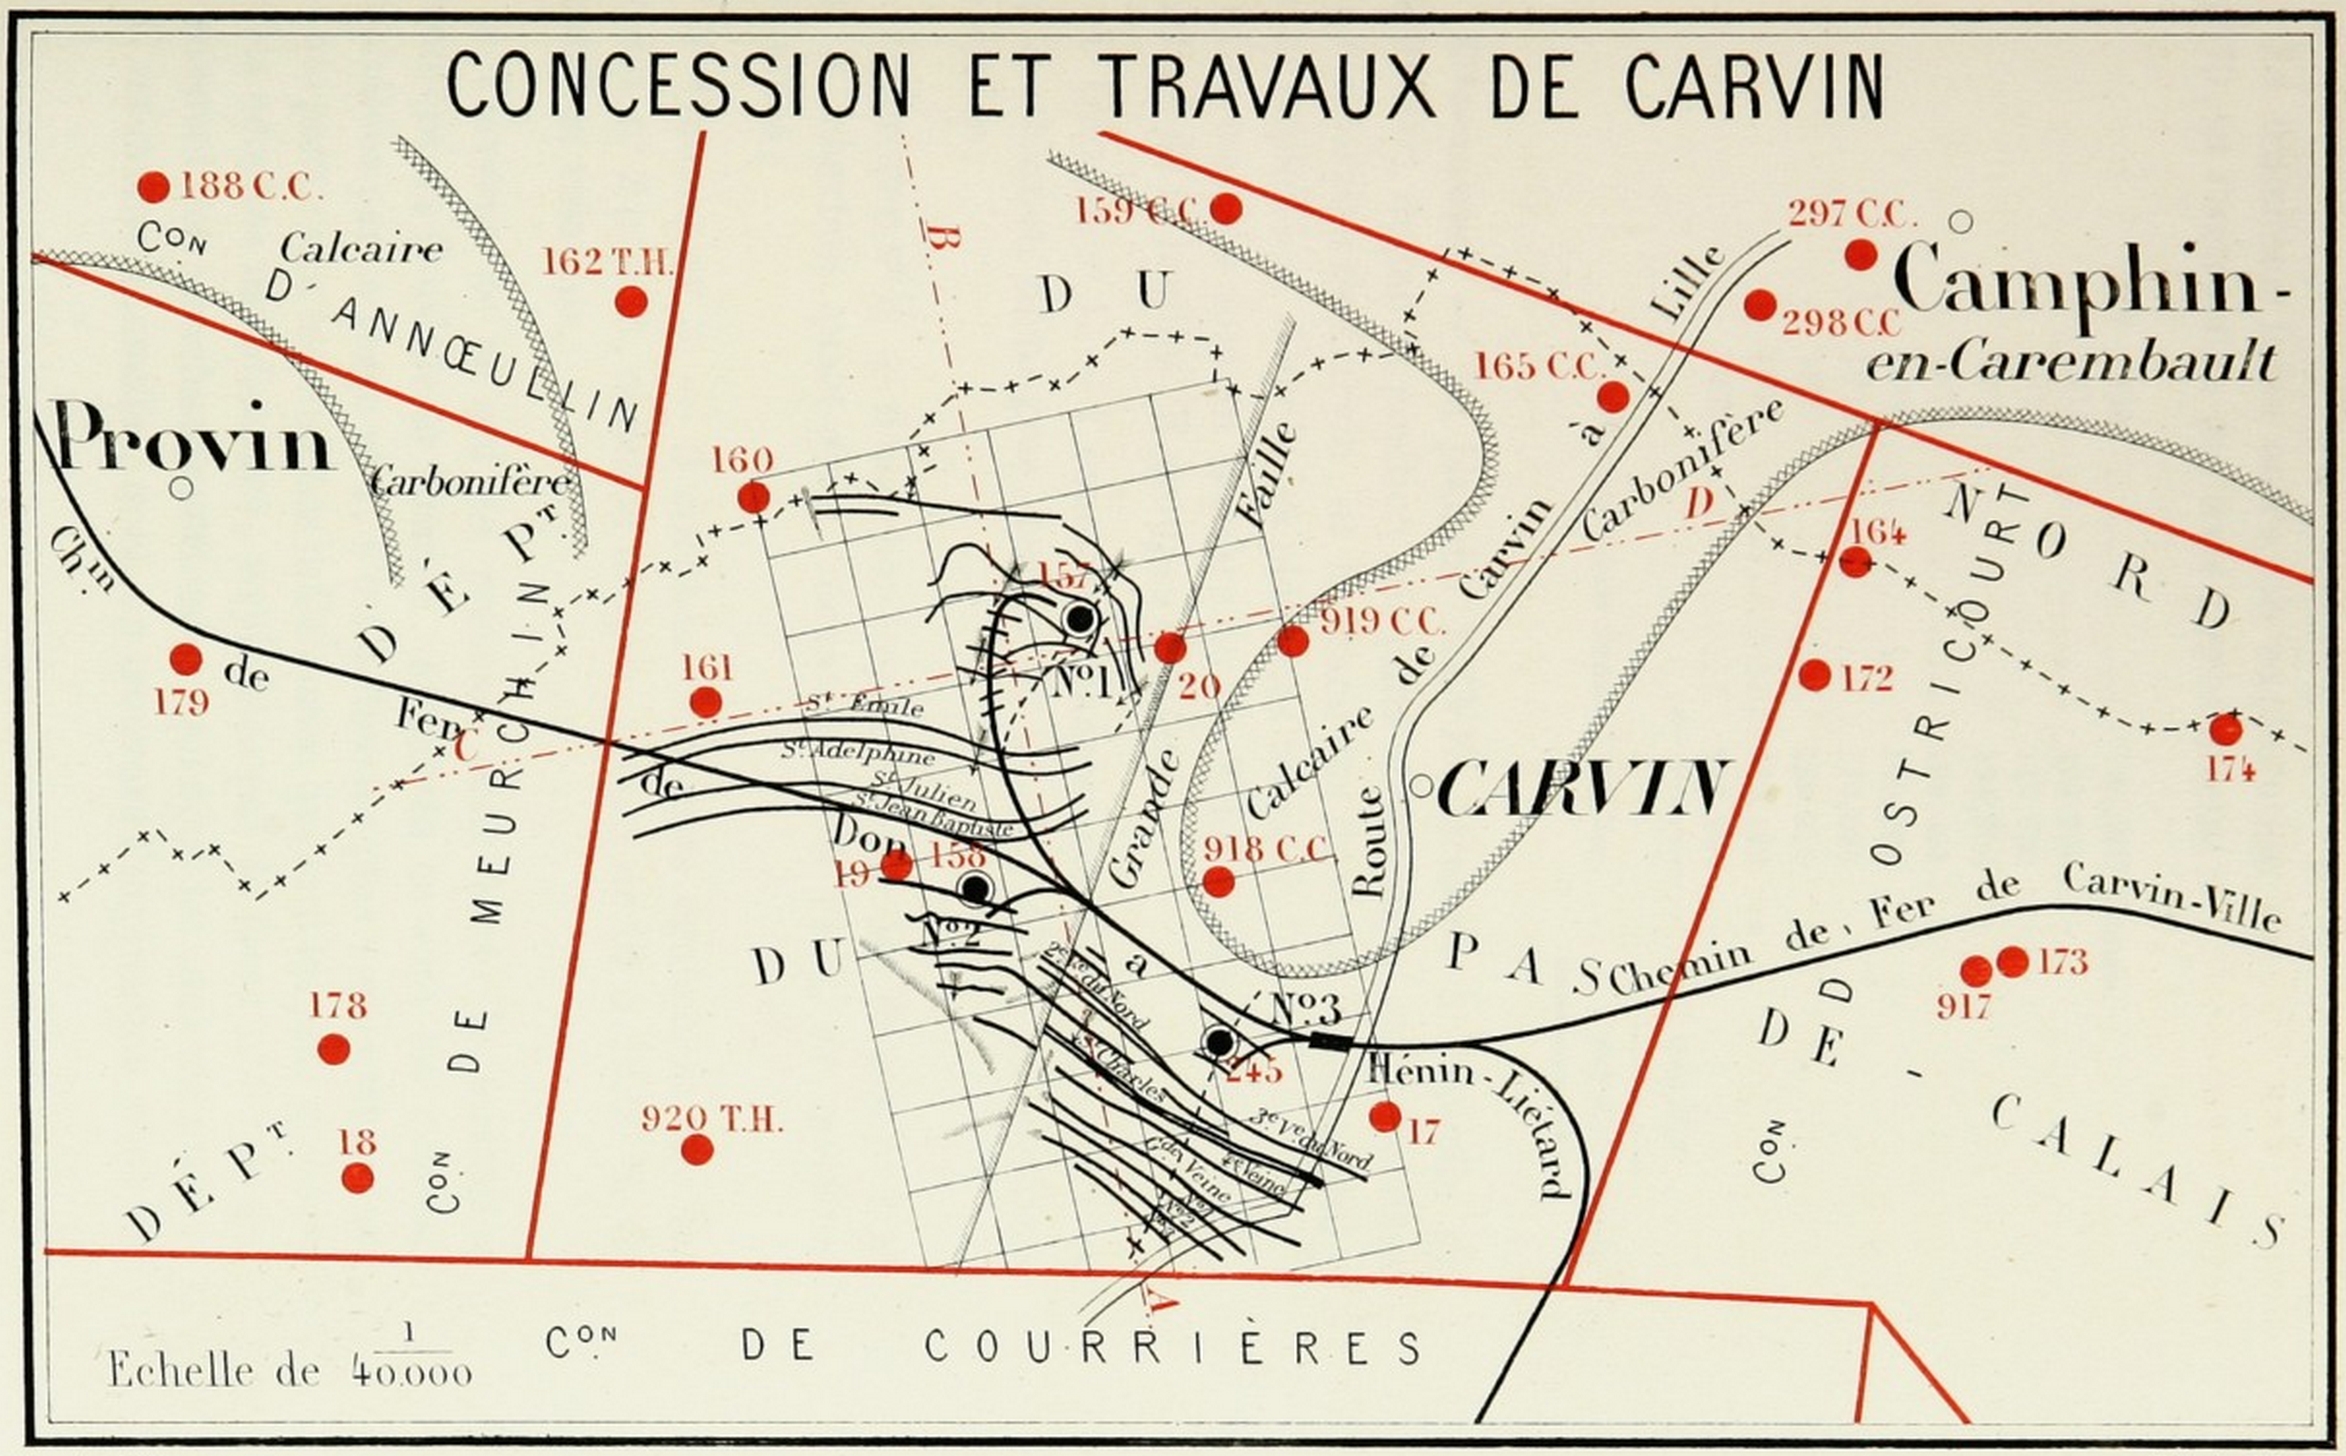 État des travaux dans la concession de Carvin en 1880 - source Wikipedia